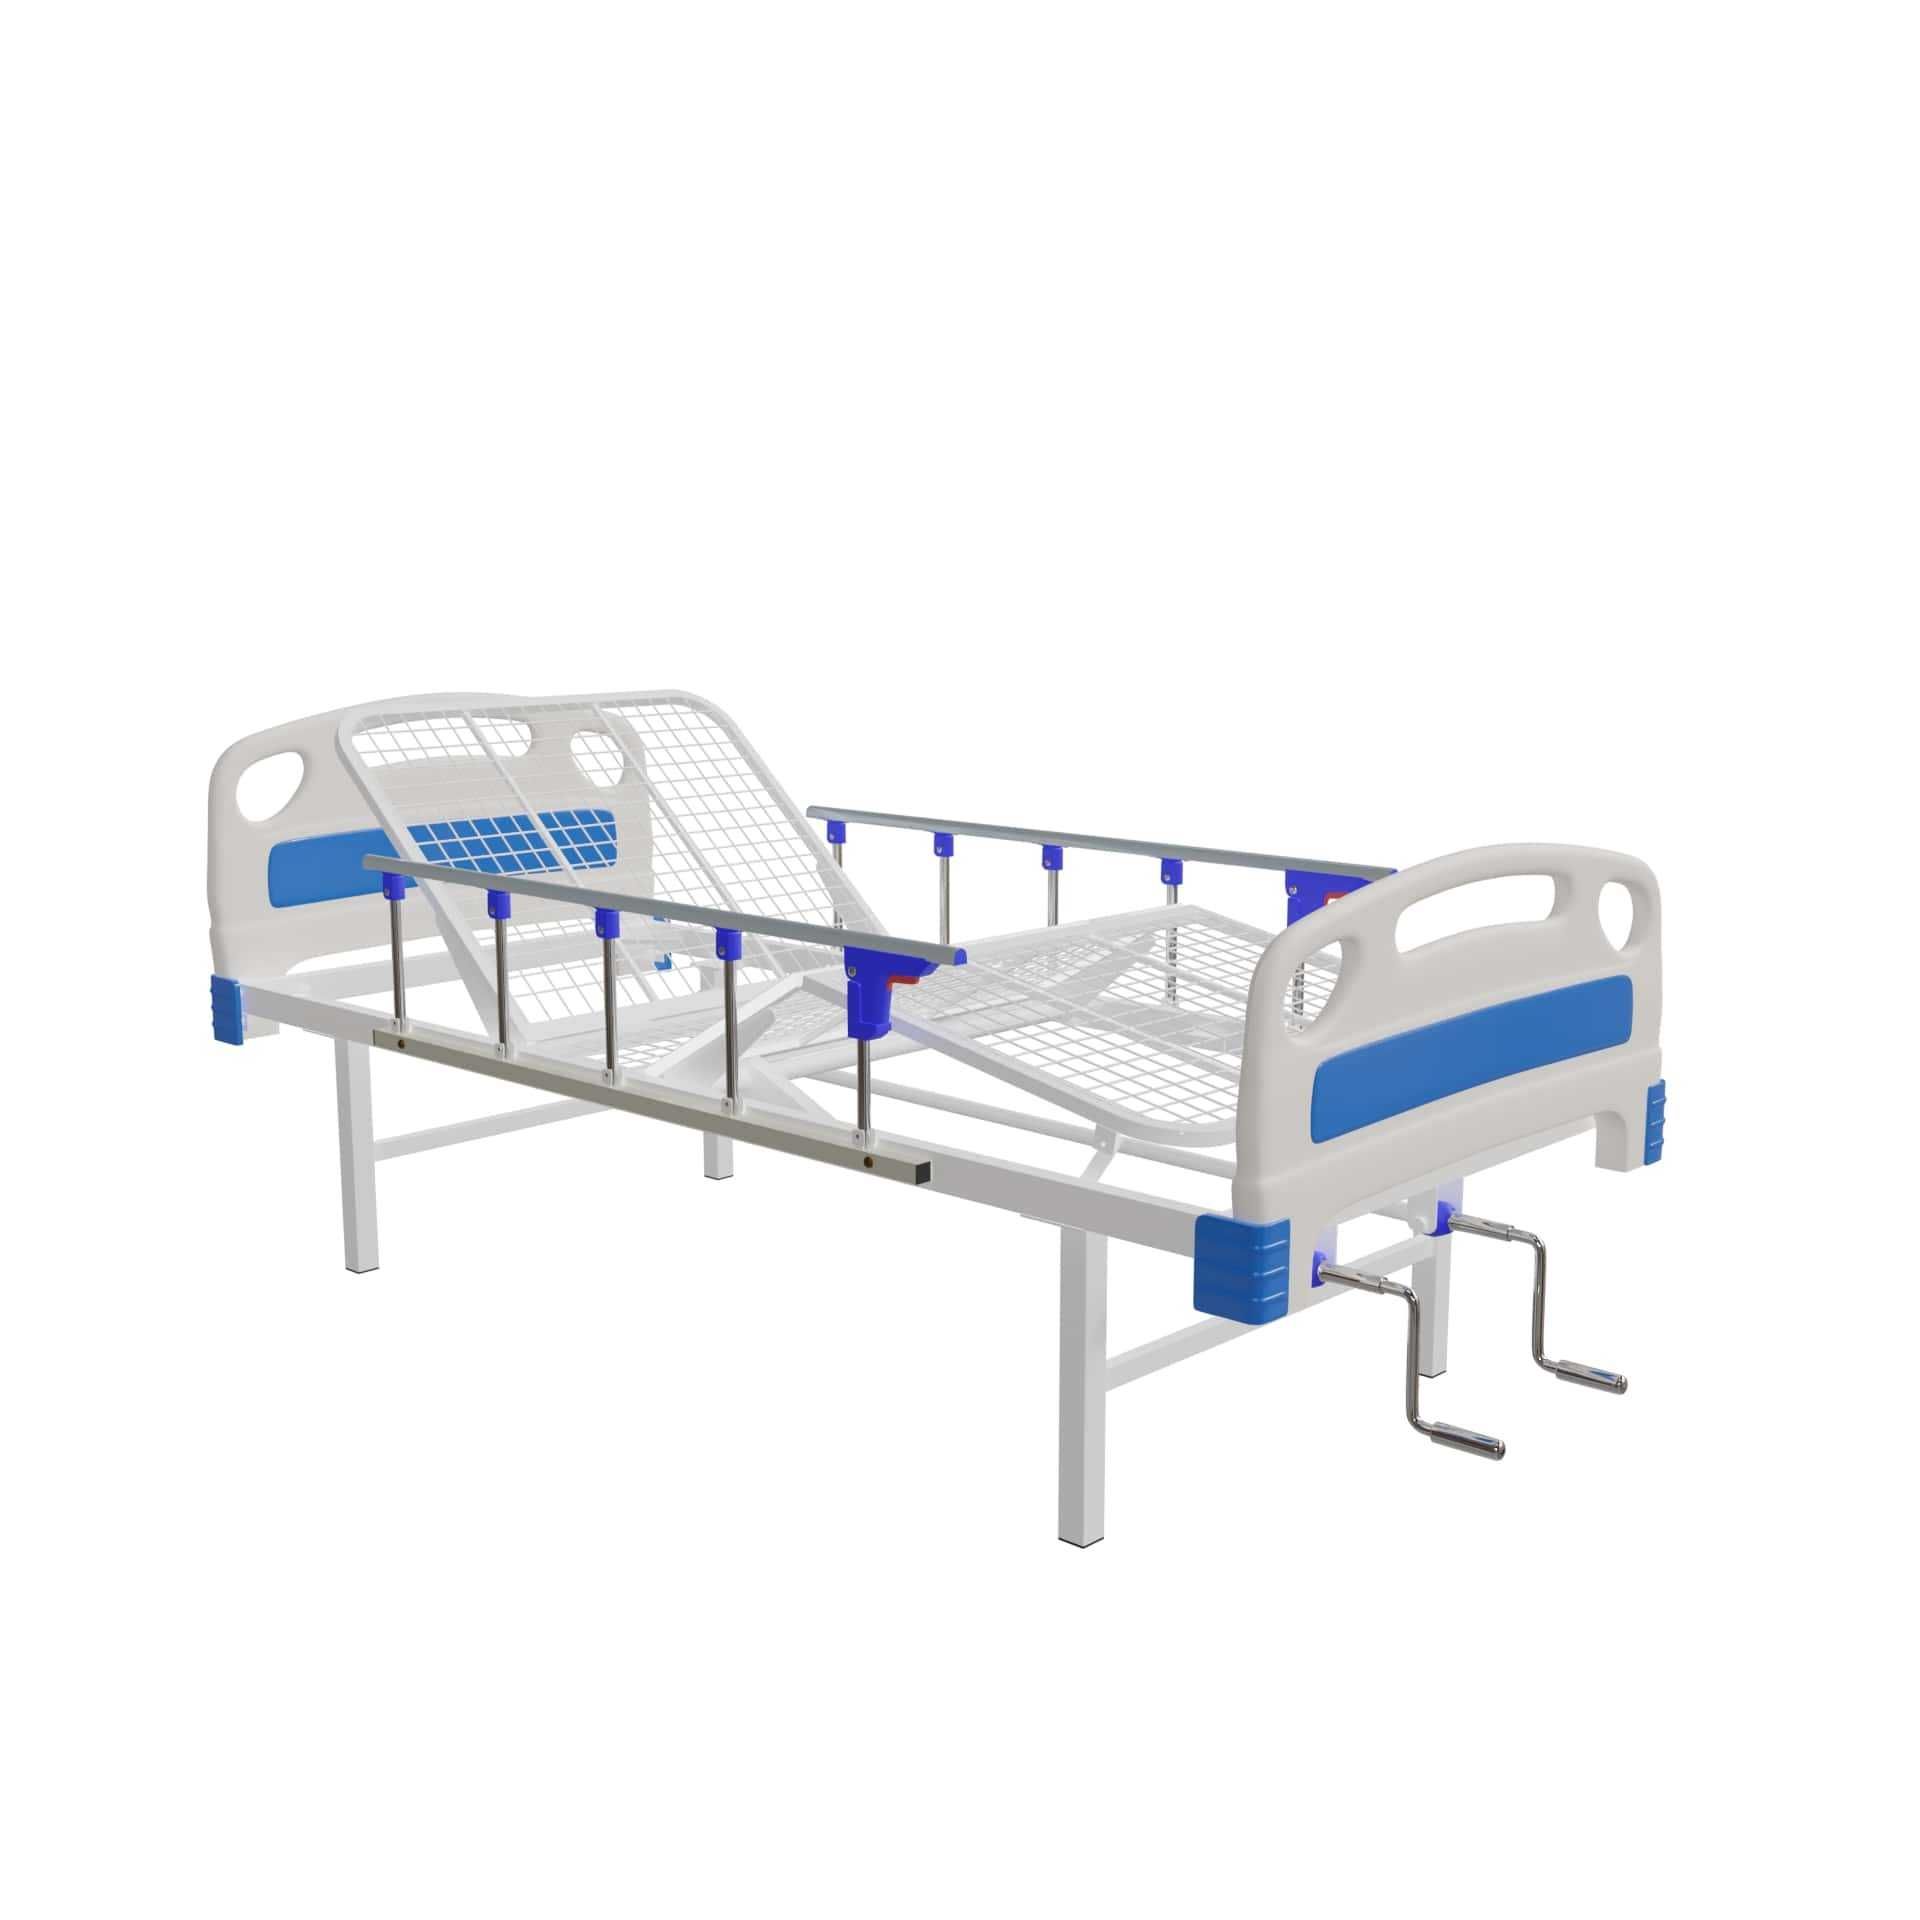 Медицинская кровать для реанимации 2-х функциональная